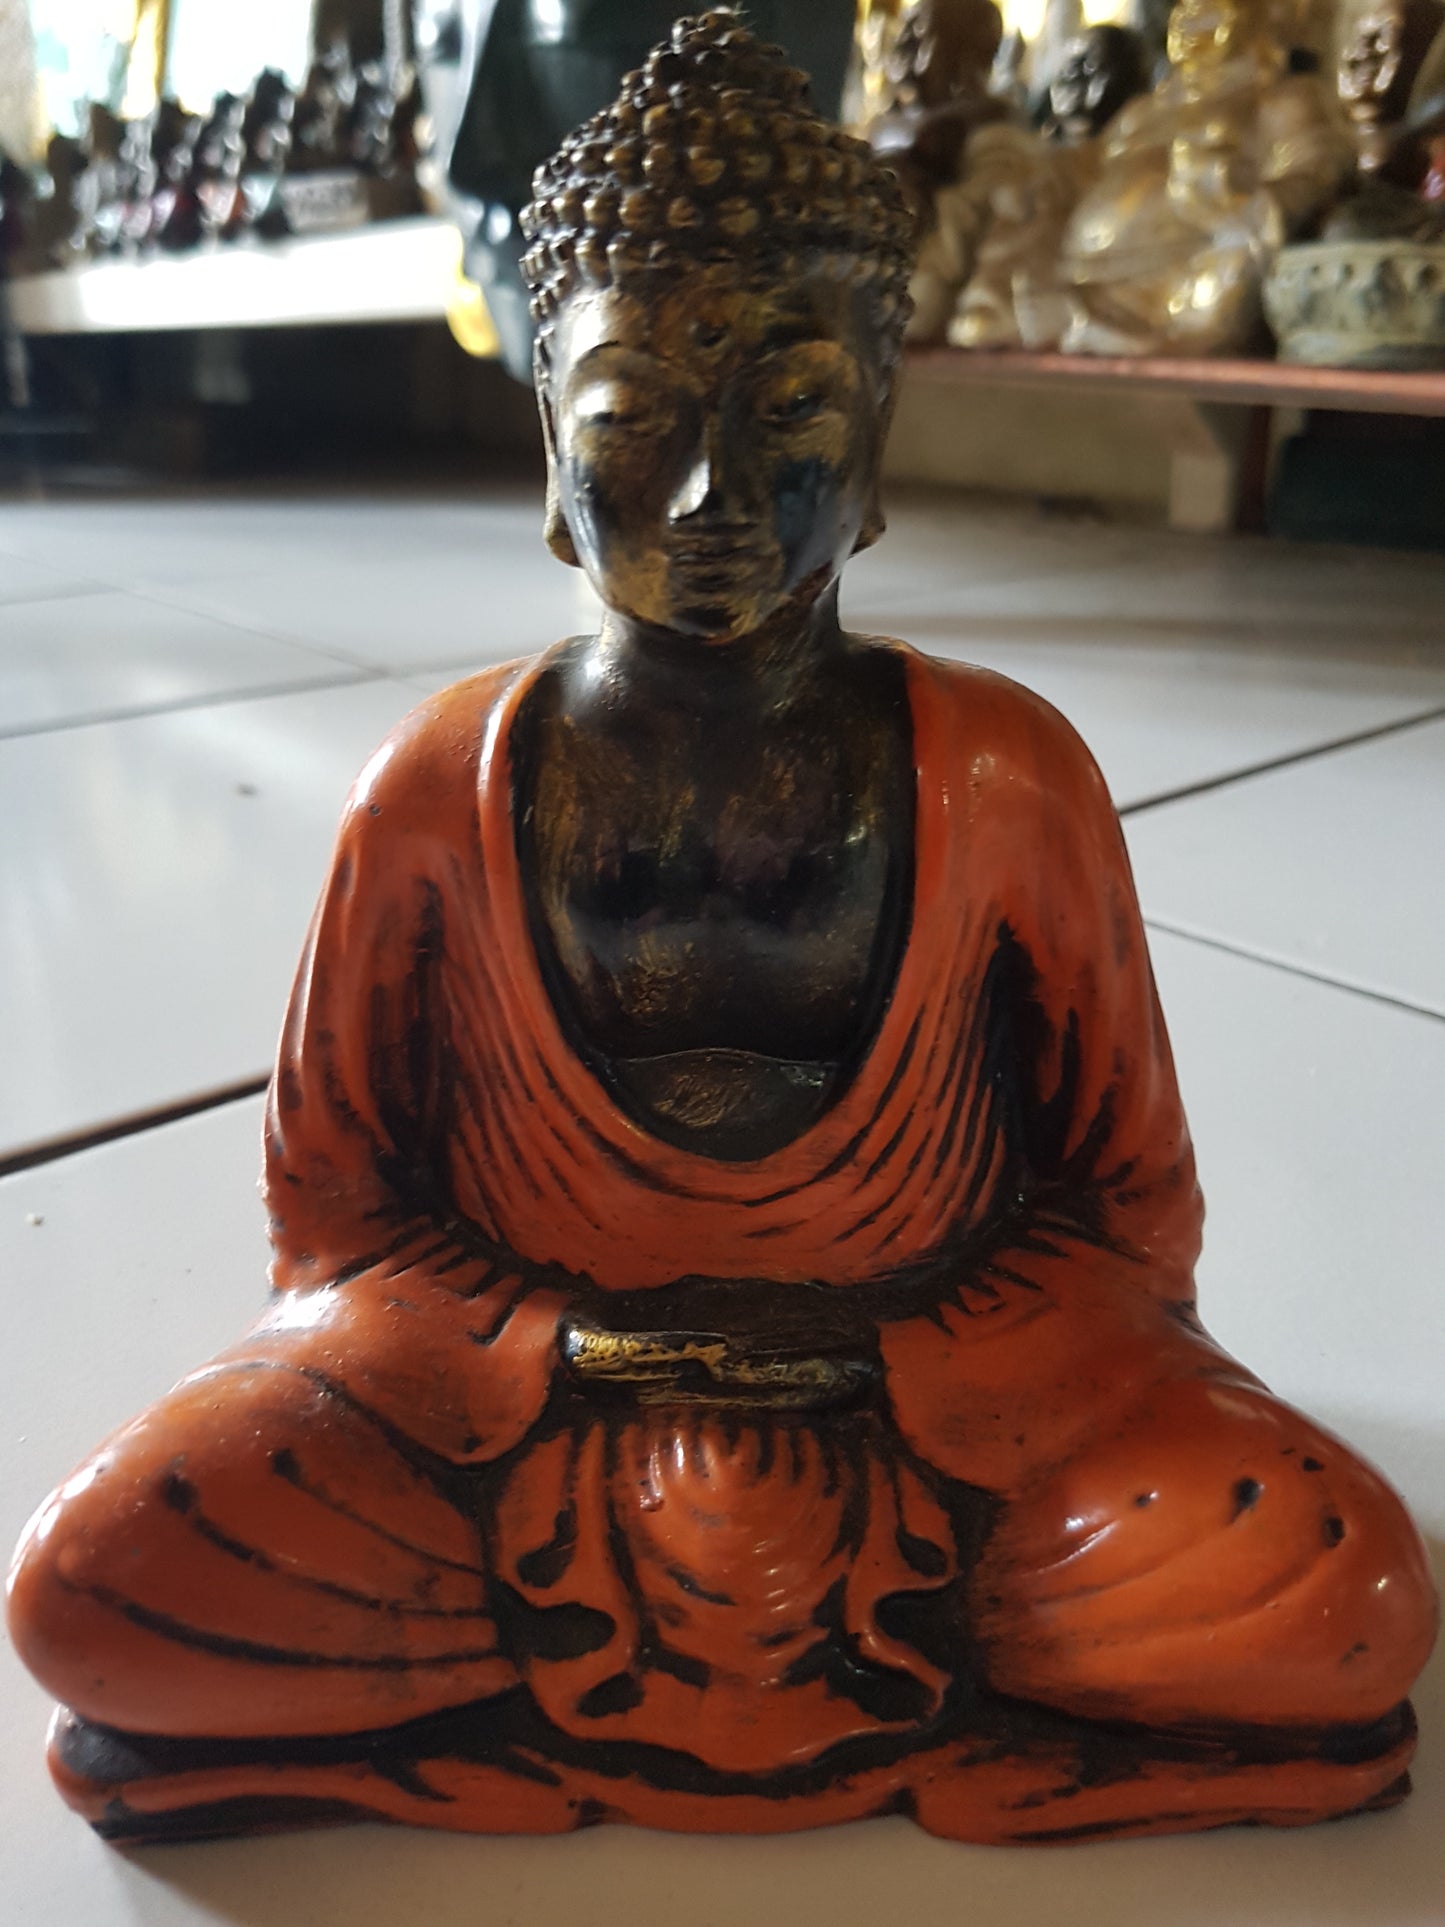 Sitting Buddha resin meditation 55-60 cm